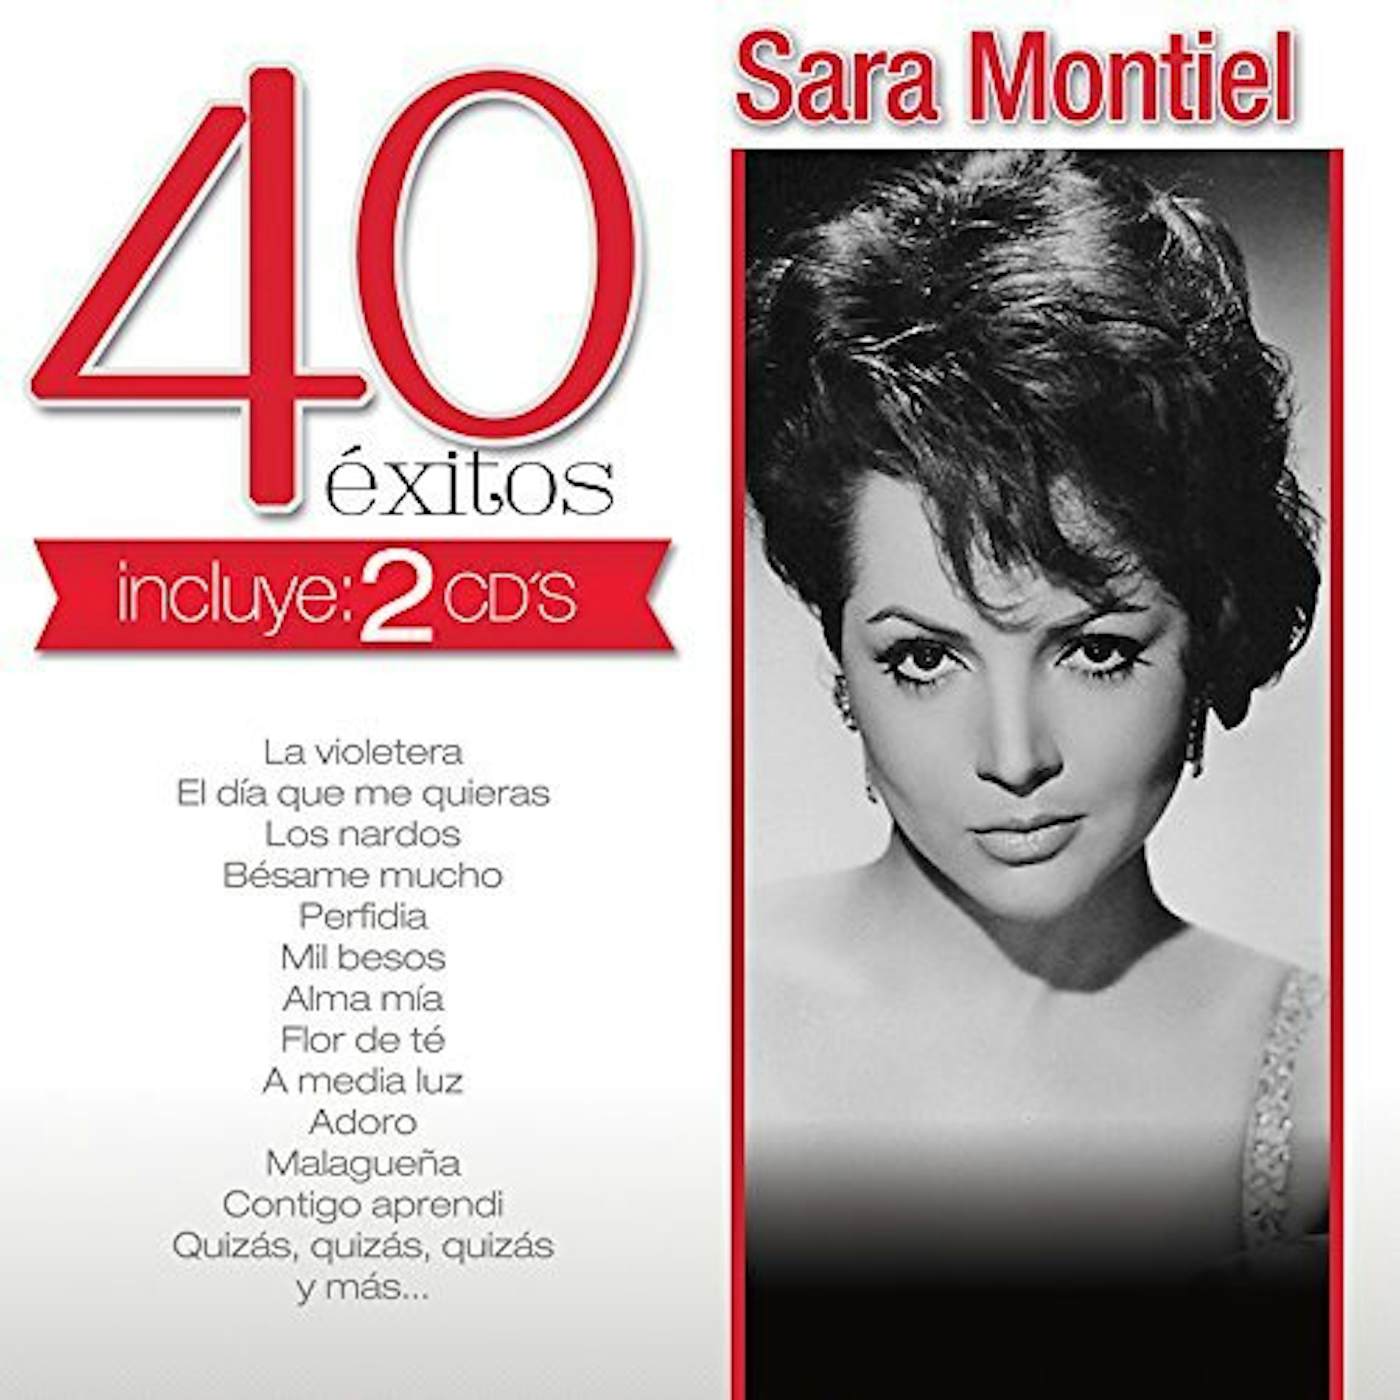 Sara Montiel 40 EXITOS CD